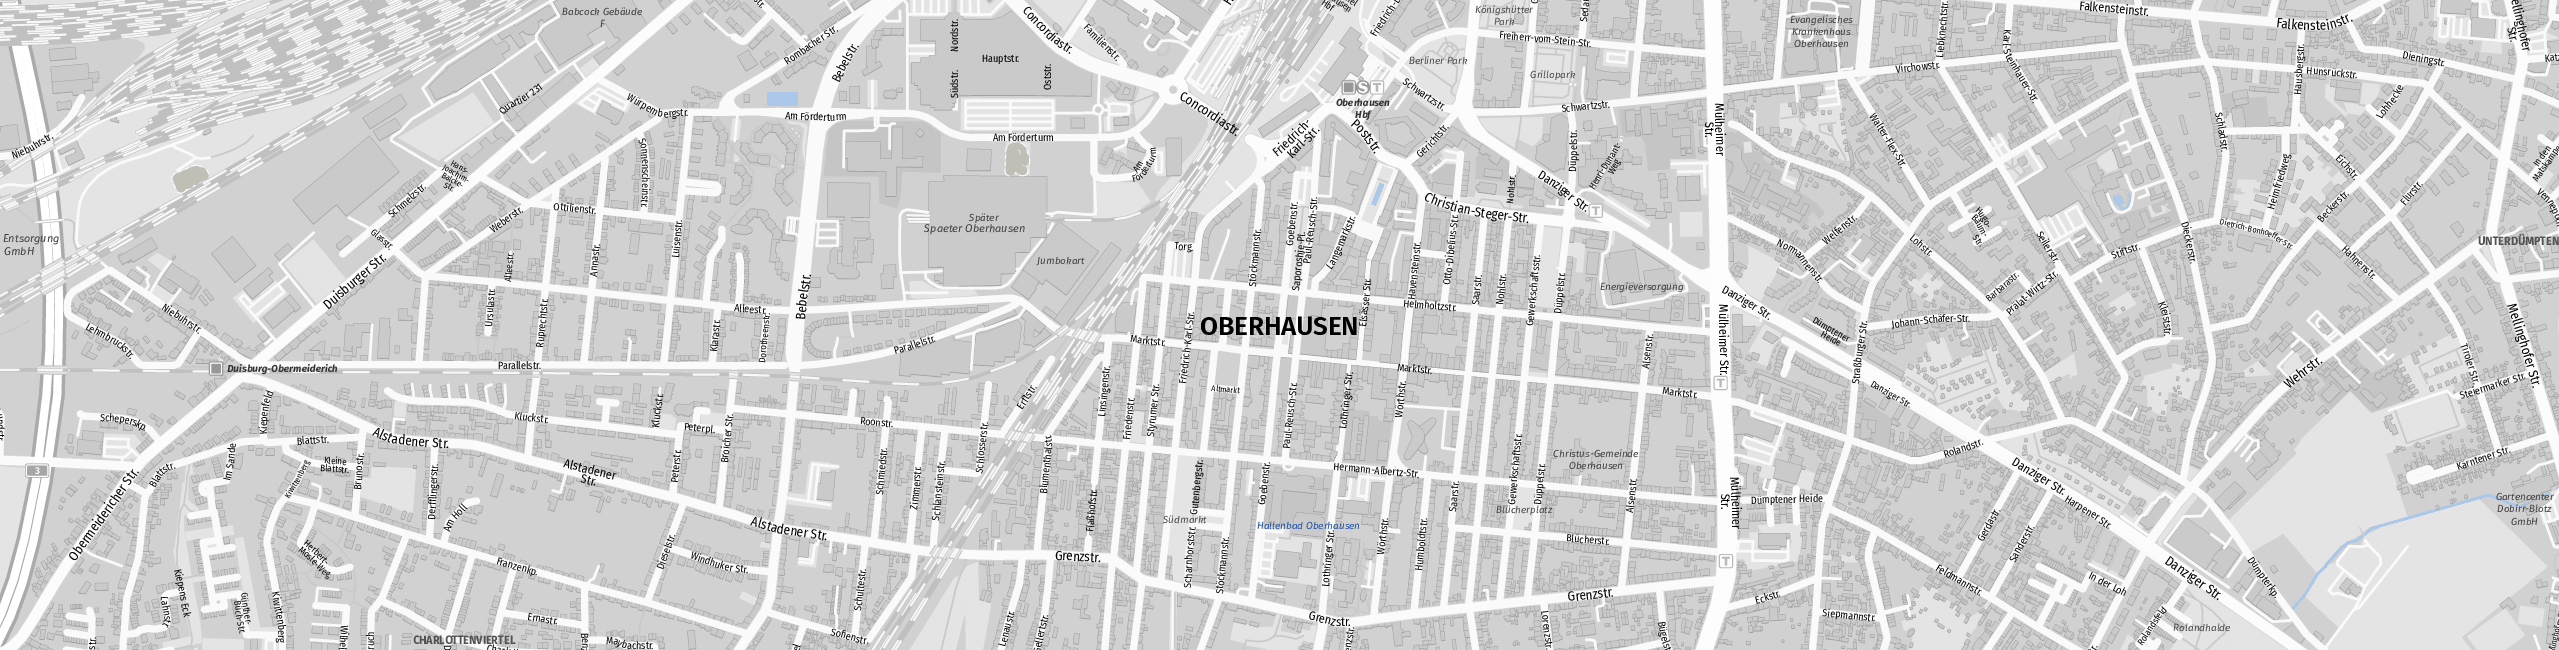 Stadtplan Oberhausen zum Downloaden.